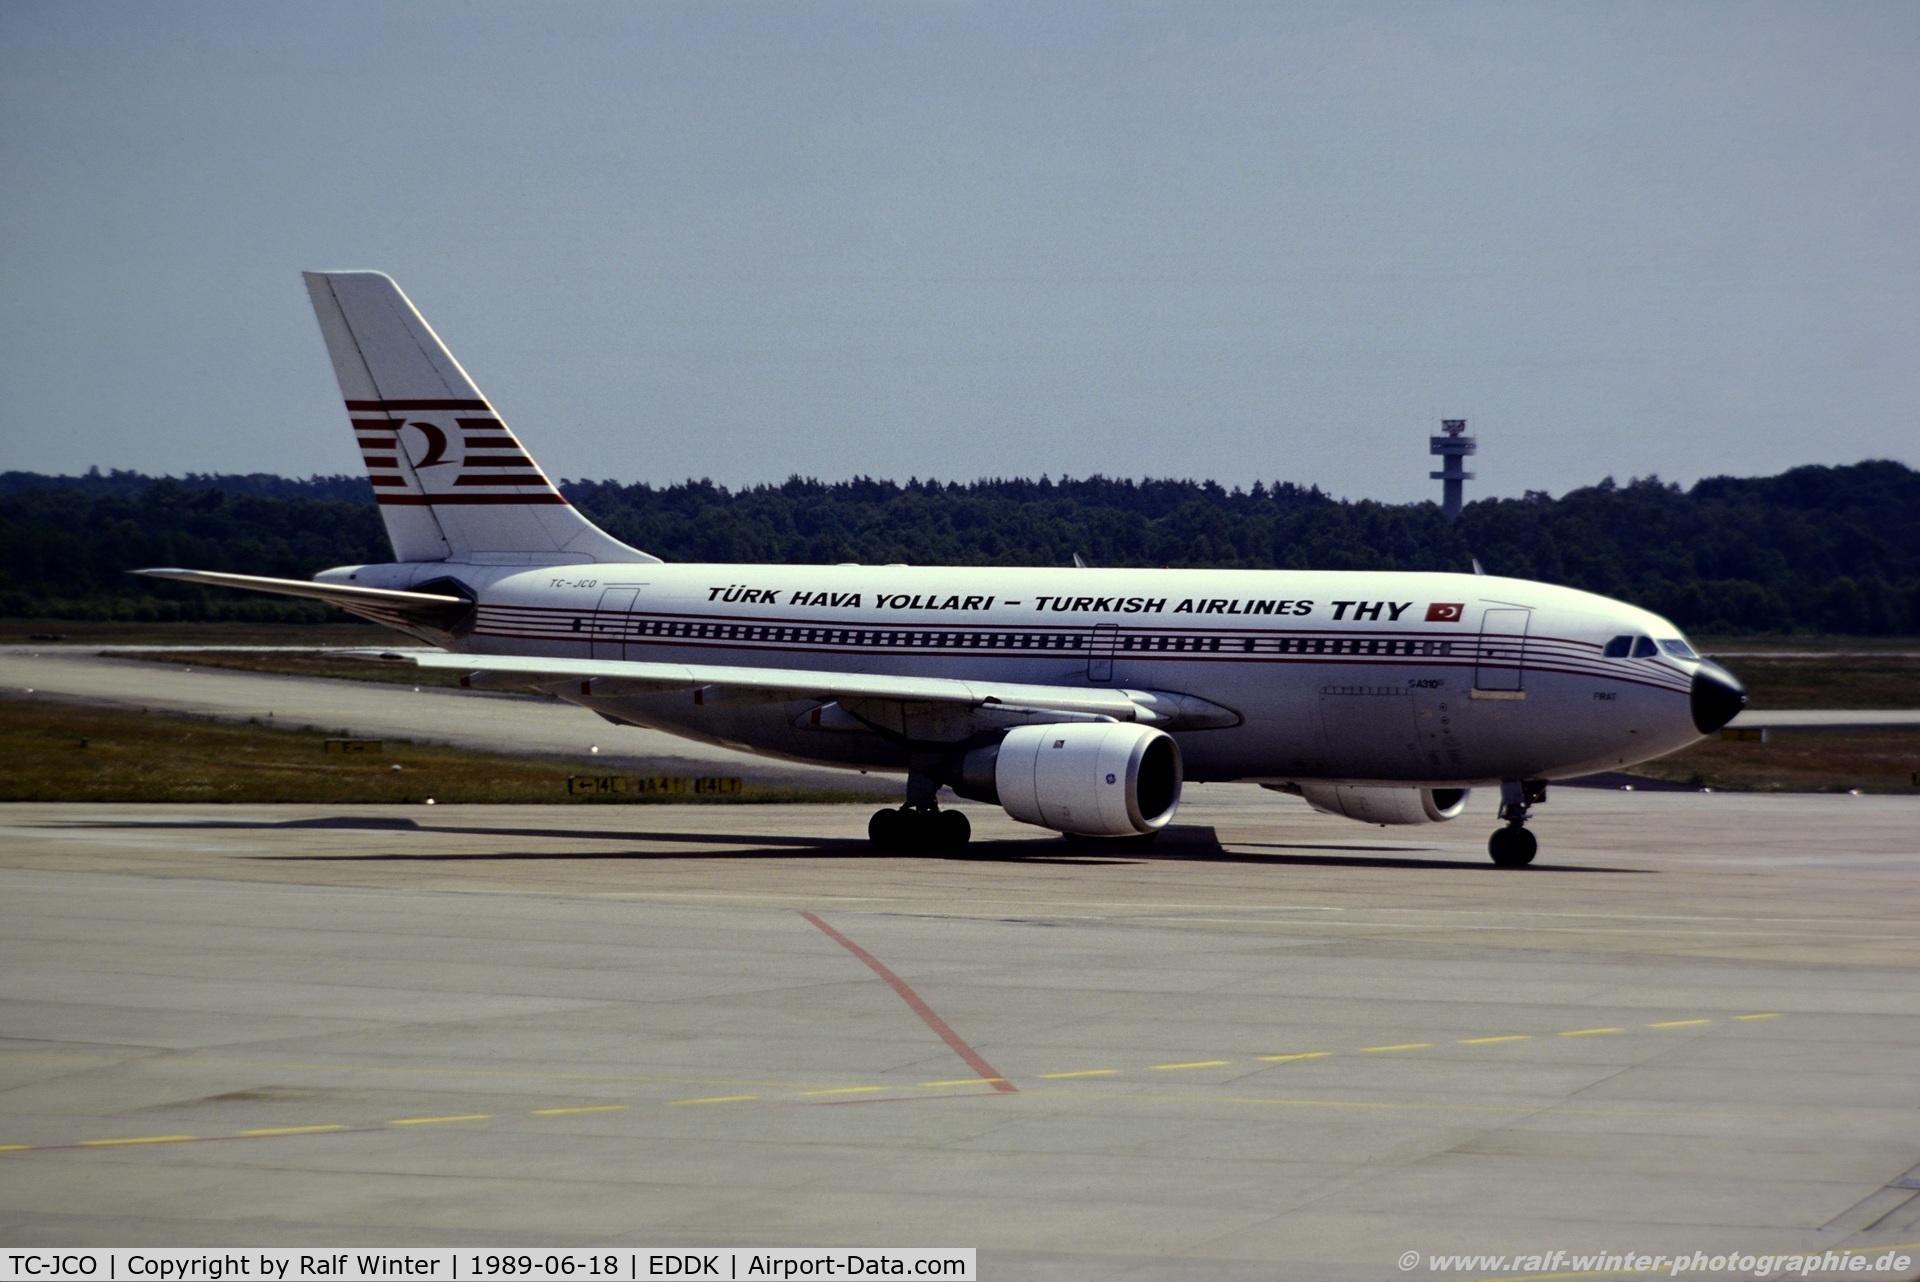 TC-JCO, 1985 Airbus A310-203 C/N 386, Airbus A310-203 - TK THY Turk Hava Yollari Turkish Airlines 'Firat' - 386 - TC-JCO - 18.06.1989 - CGN